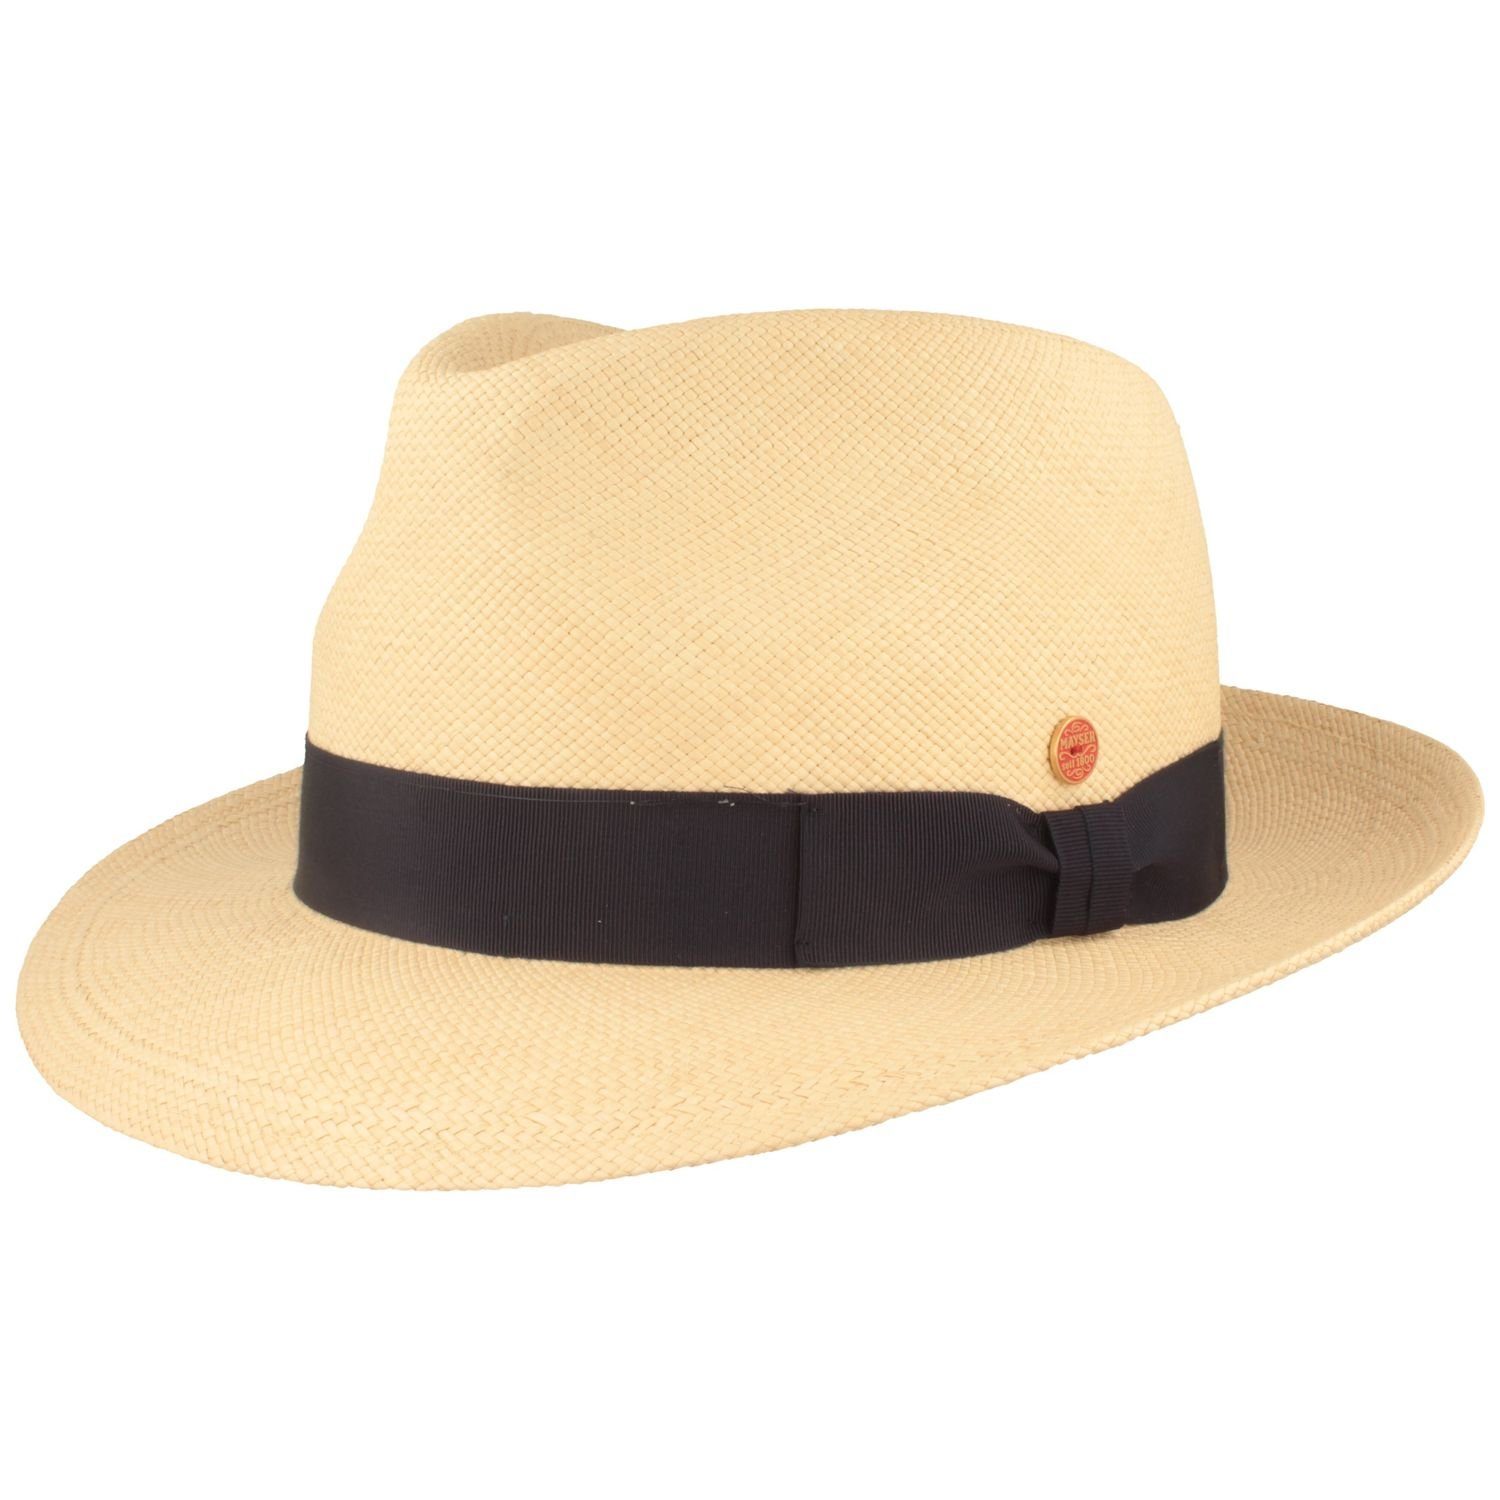 Mayser Strohhut wasserabweisender, Manuel Panama 0004 Hut mit UV-Schutz marine hochwerigter natur/5002 80